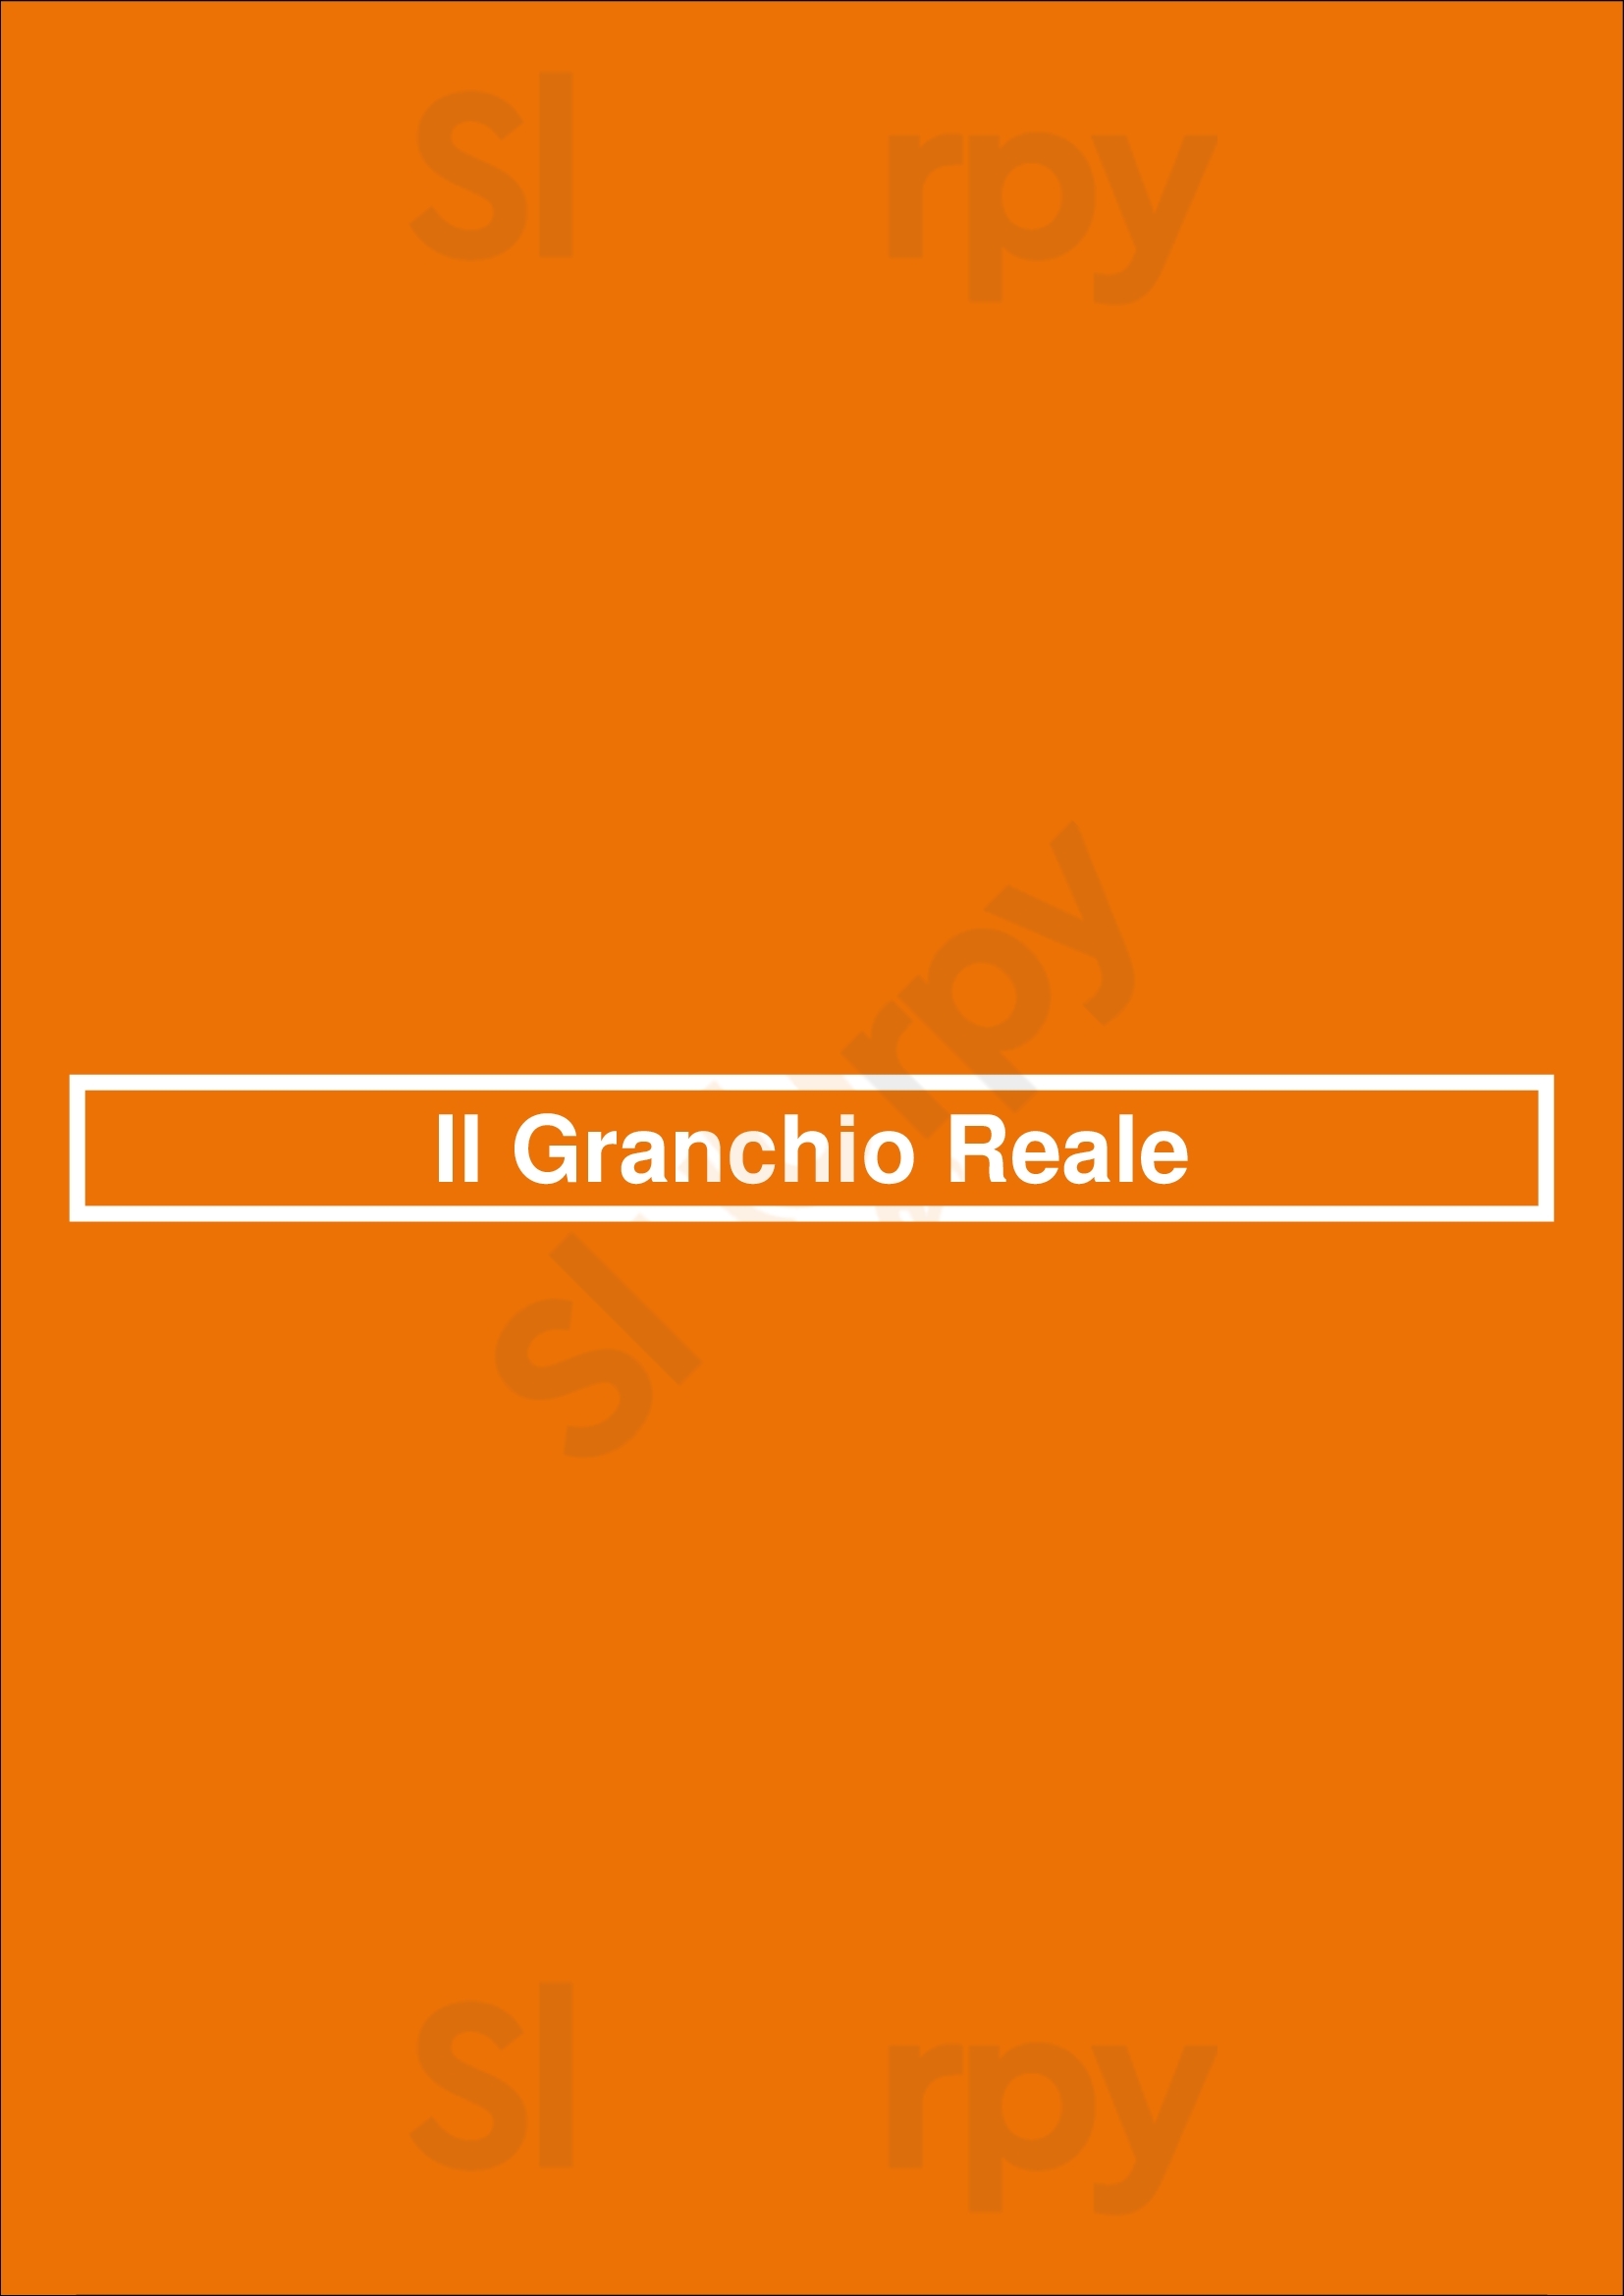 Il Granchio Reale Marbella Menu - 1